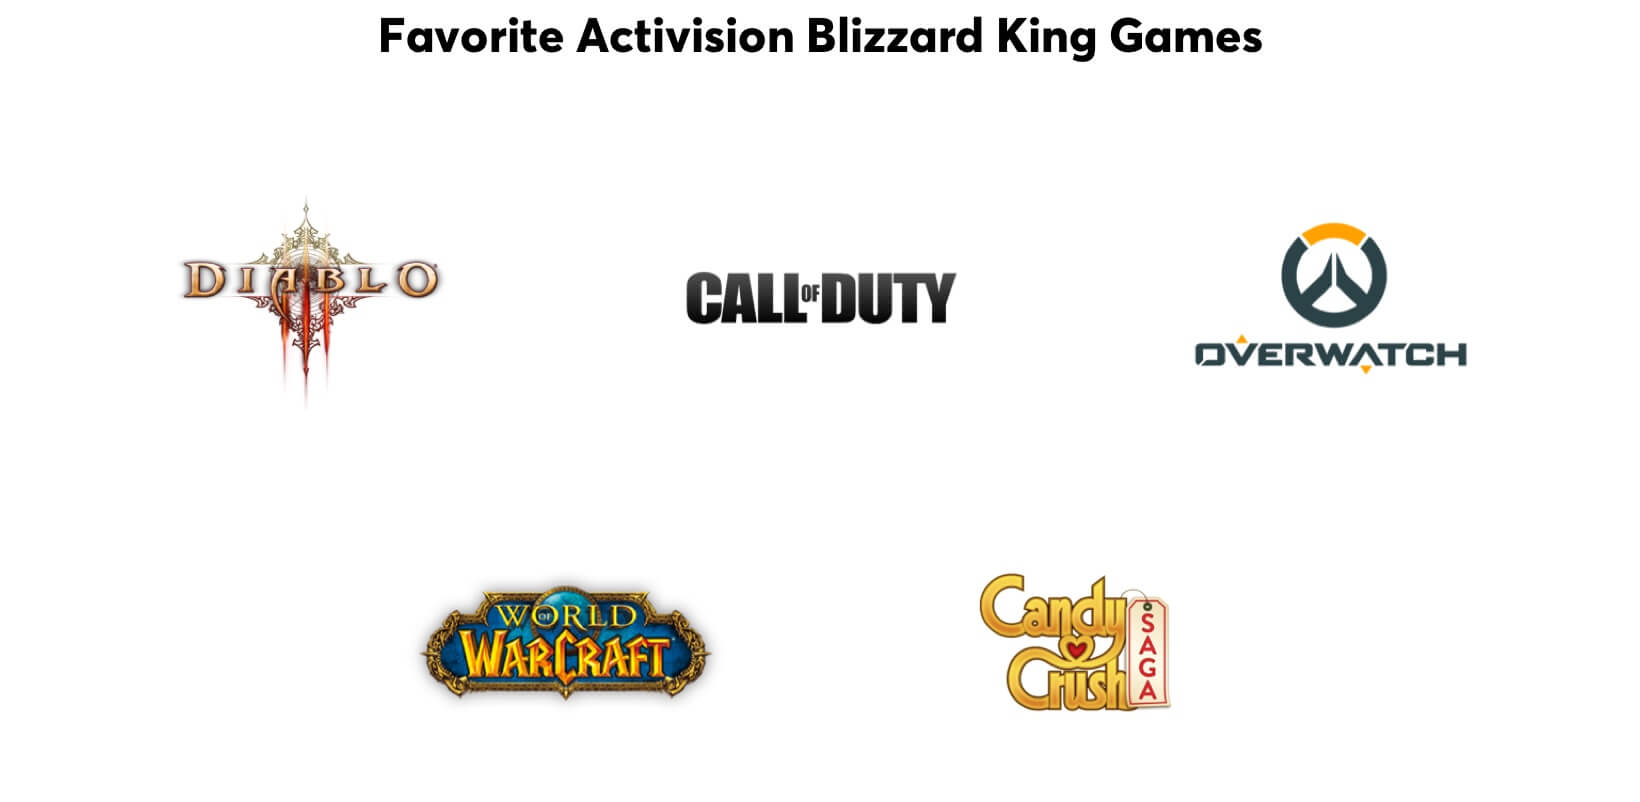 Giochi preferiti dei Fenomeni: Diablo, Call of Duty, Overwatch, World of WarCraft e Candy Crush